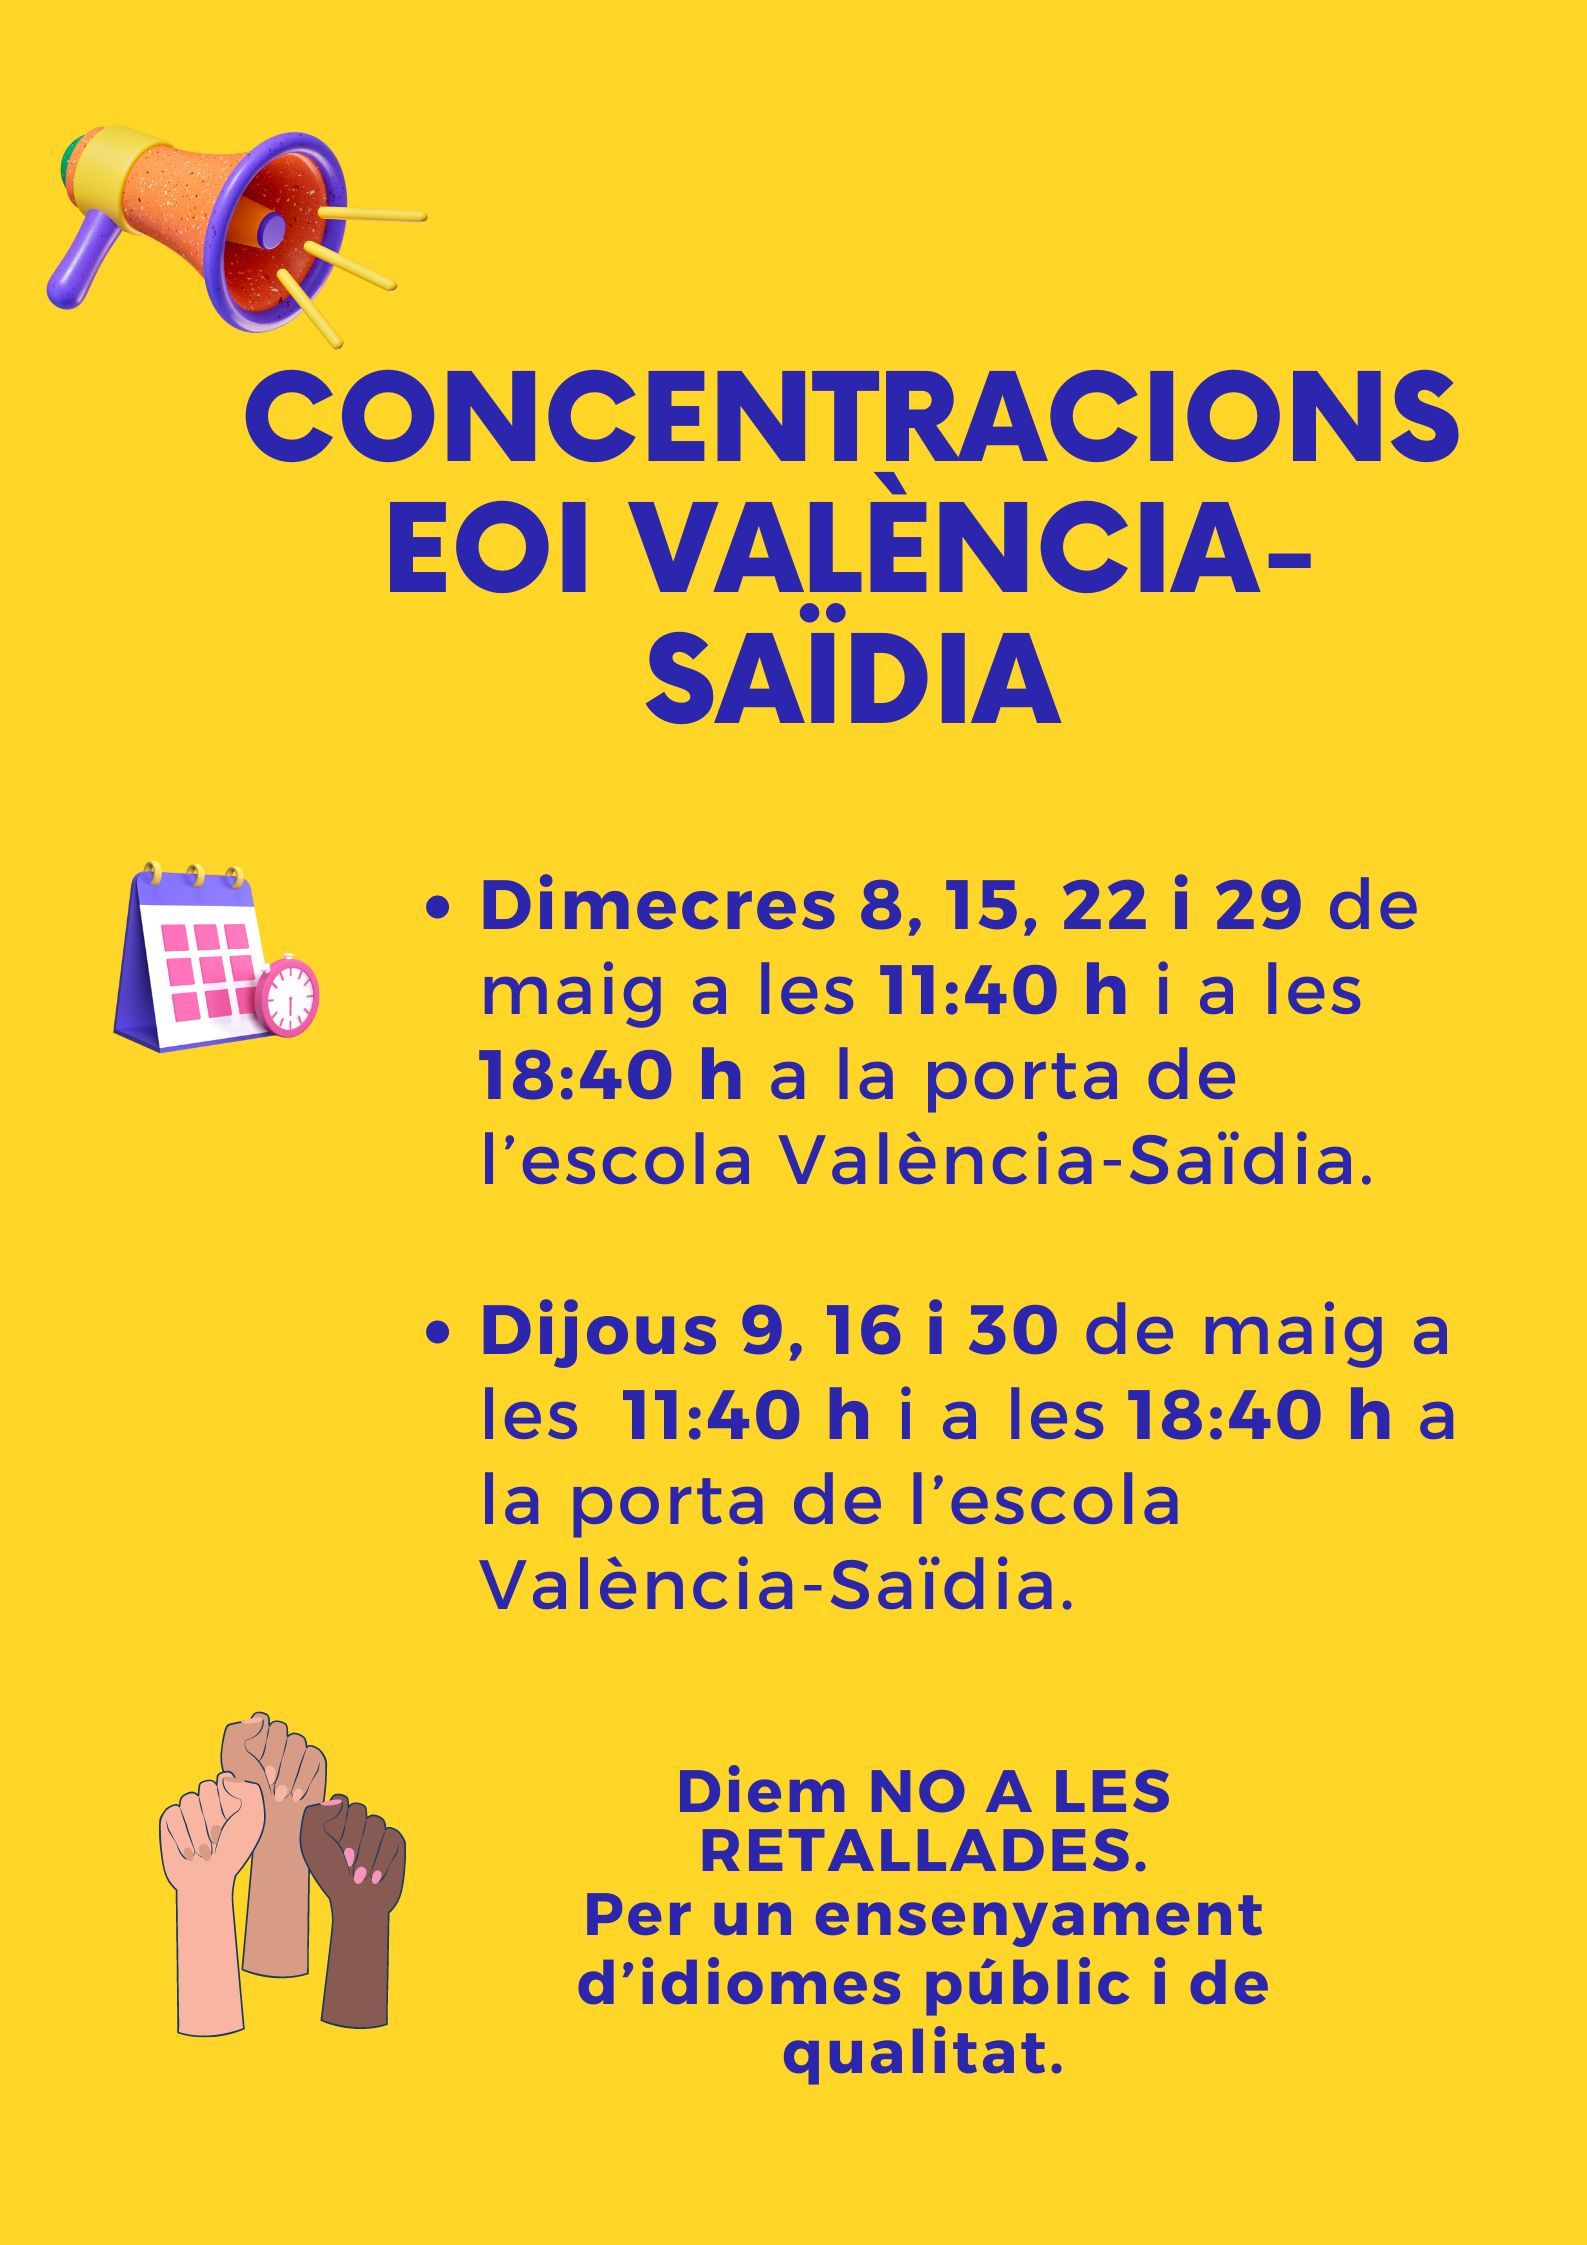 Cartel con el calendario de protestas convocadas en la EOI València-Saïdia durante el mes de mayo